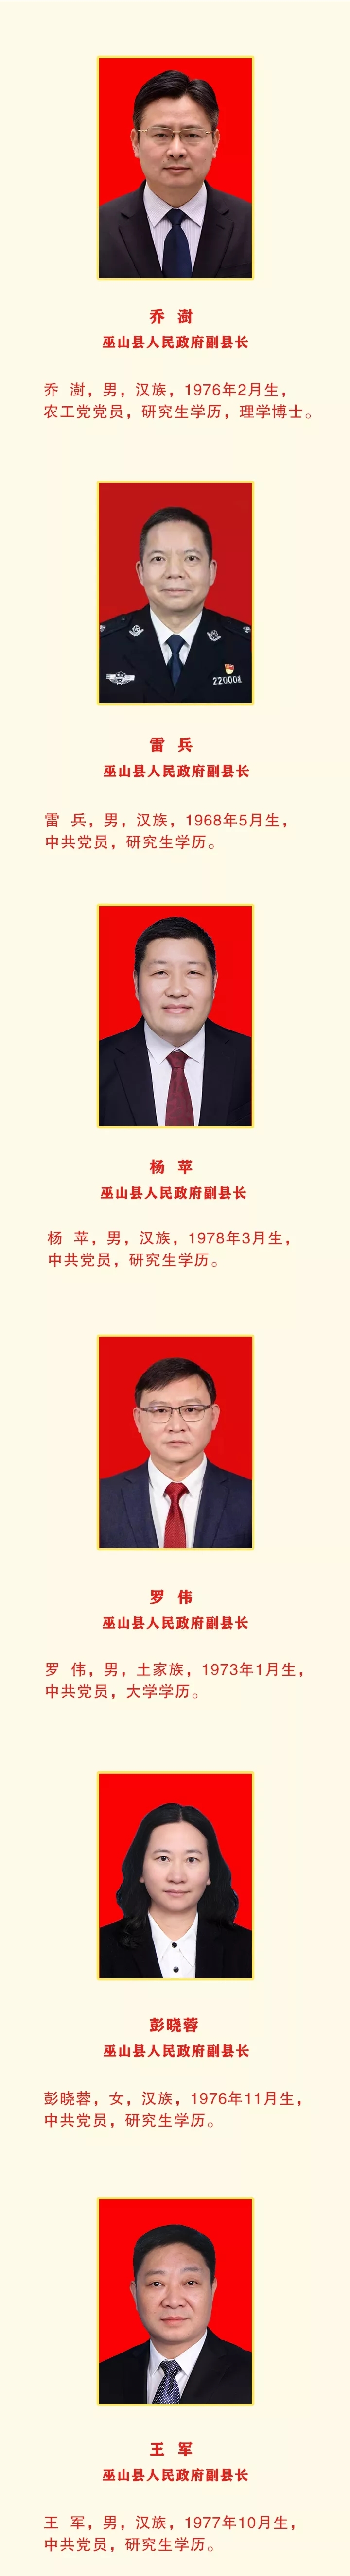 新一届巫山县政府领导班子亮相:付嘉康为县长